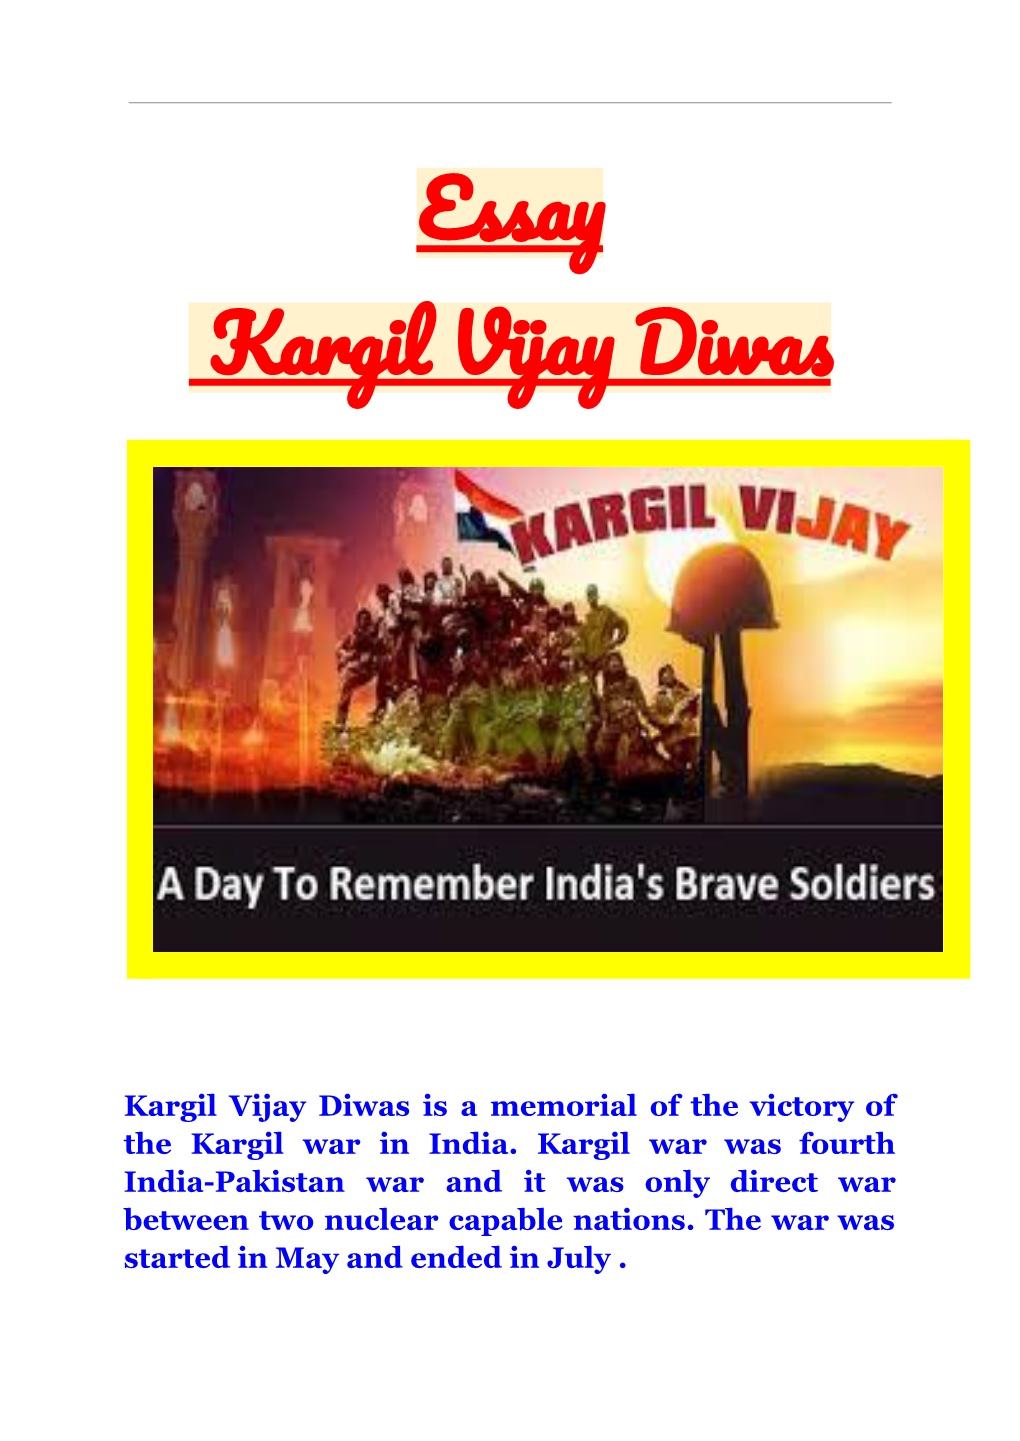 Kargil Vijay Diwas Essay by Aditya Singh Tiwari